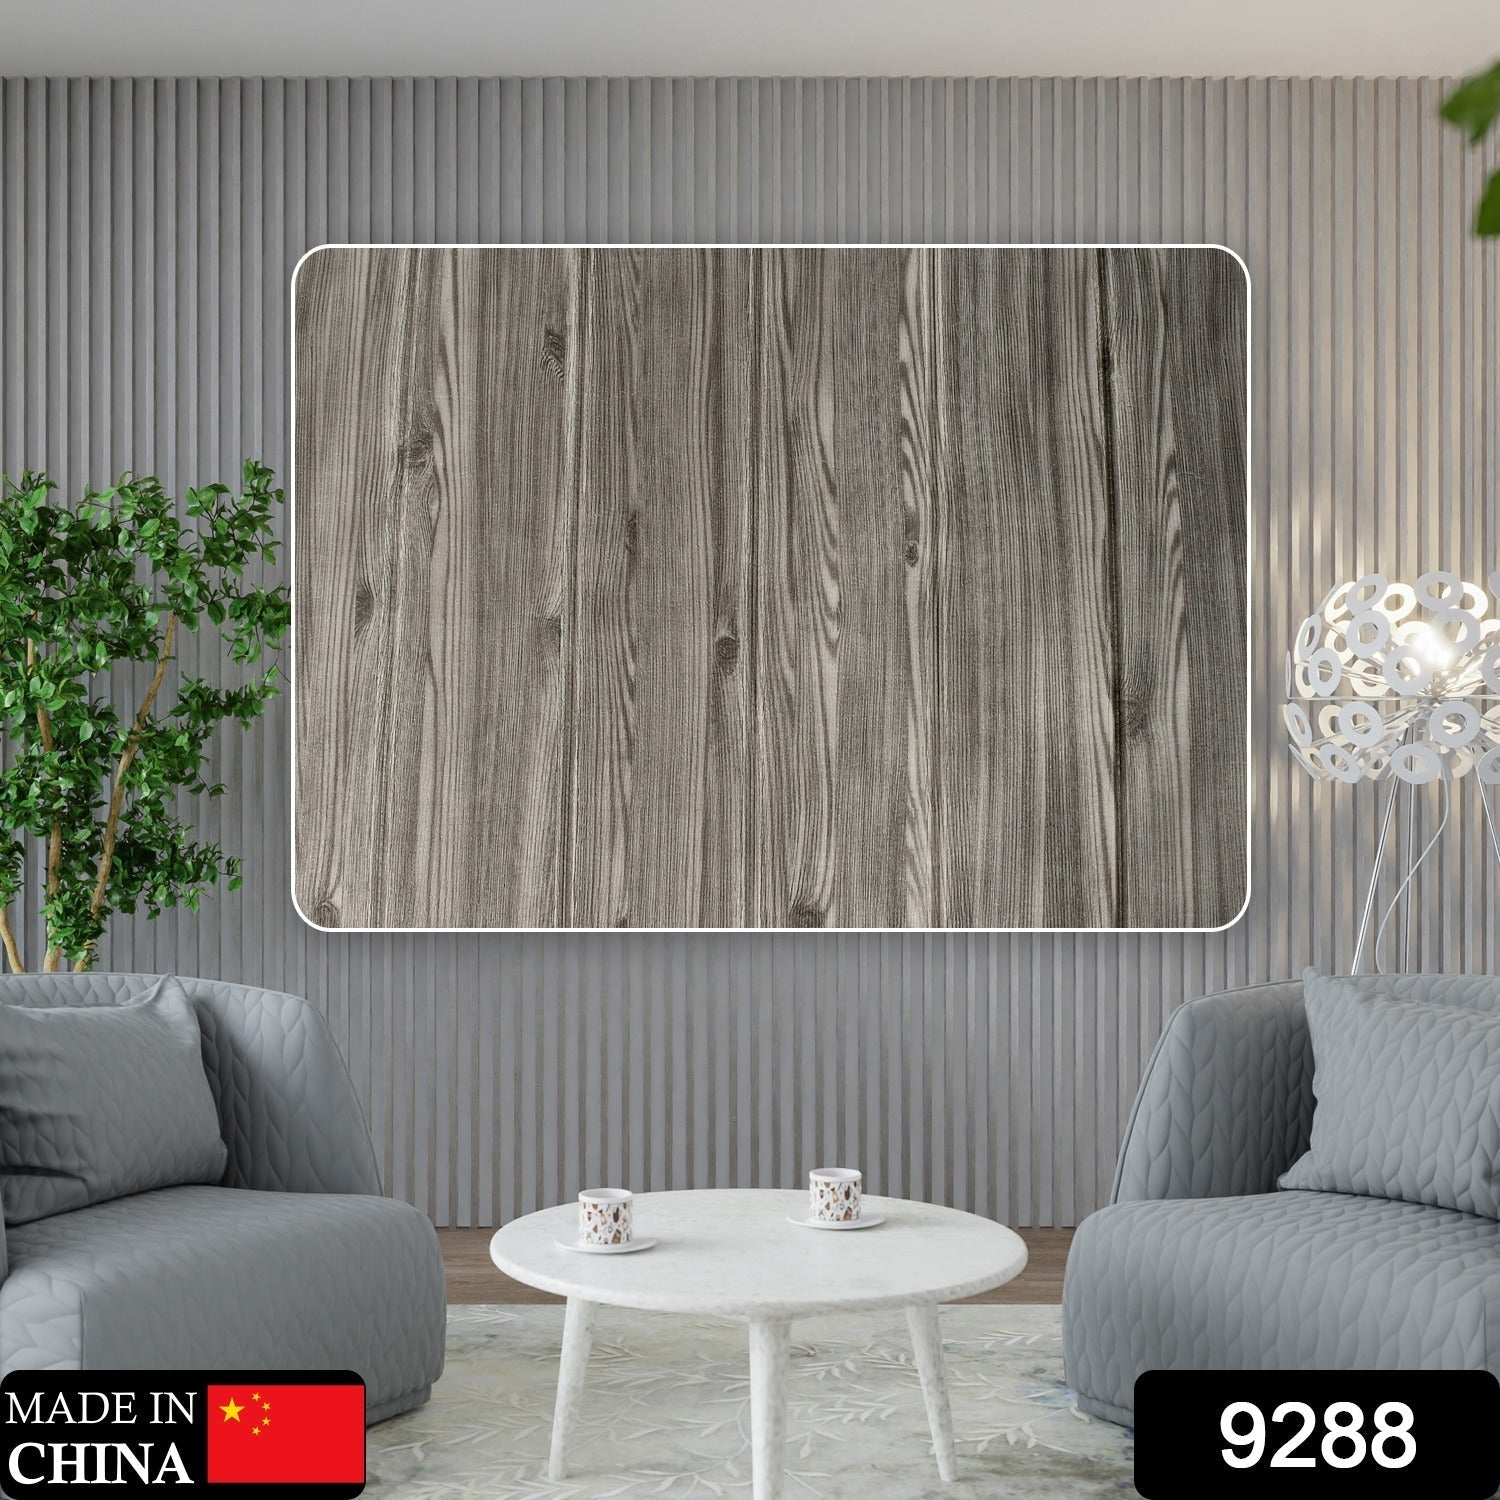 9288 Design Wallpaper 3D Foam Wallpaper Sticker Panels I Ceiling Wallpaper For Living Room Bedroom I Furniture, Door I Foam Tiles (Black Color) (Size - 73X73 cm) DeoDap